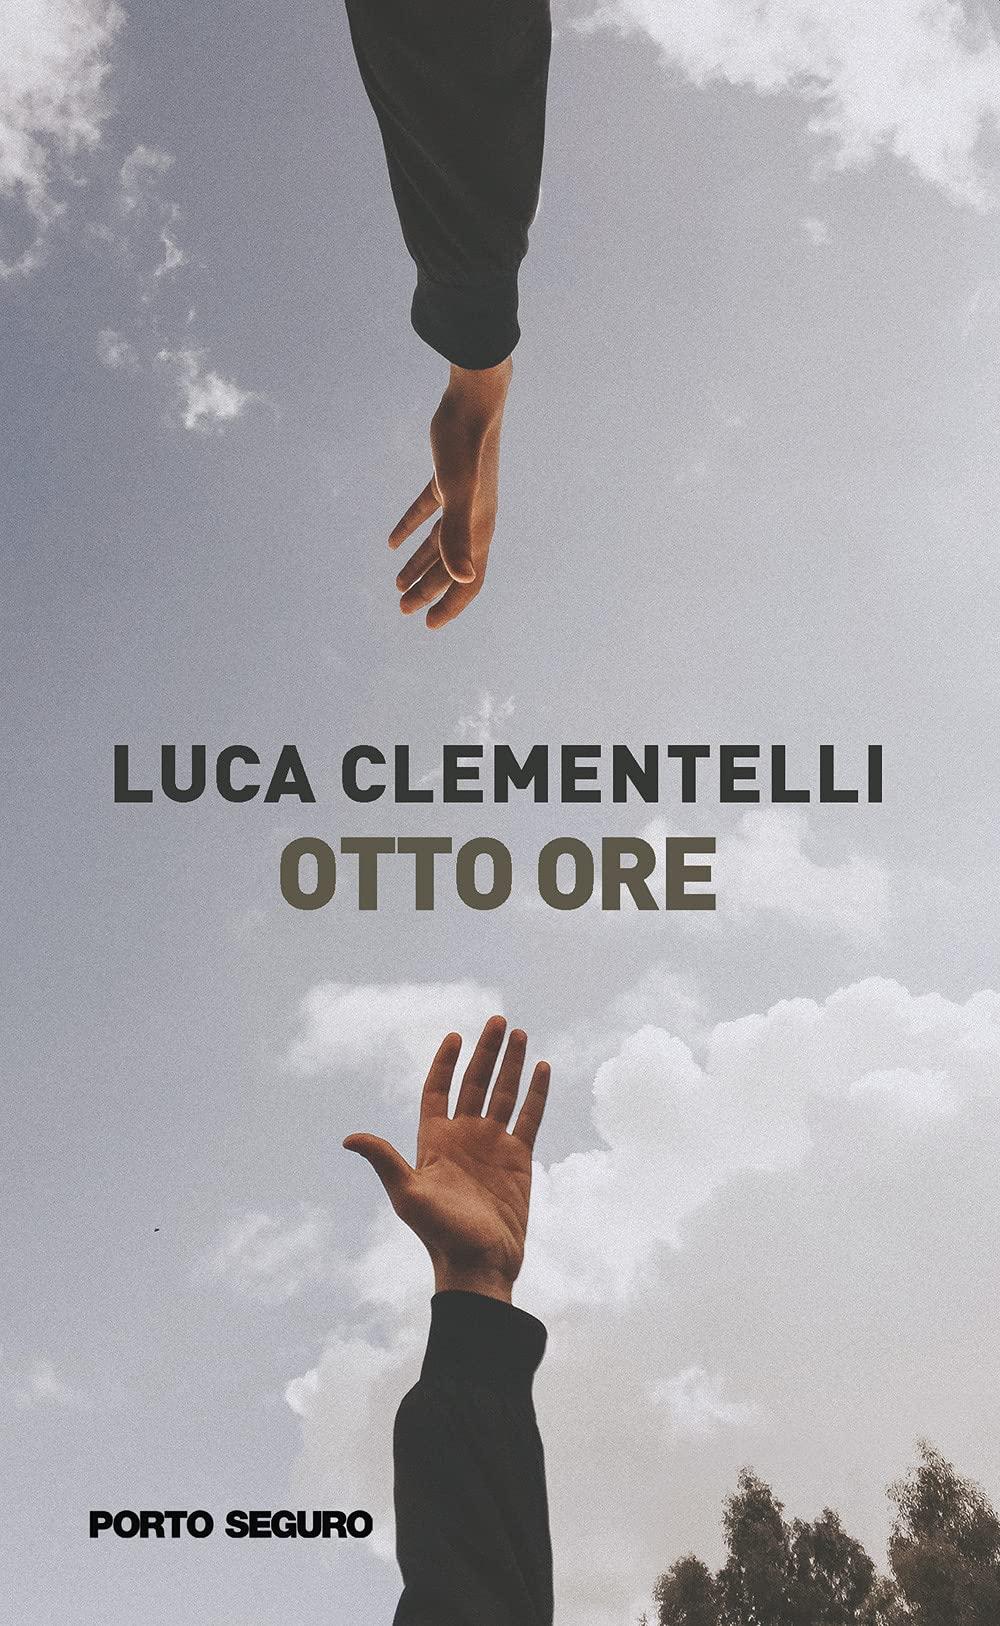 Libro "Otto ore" di Luca Clementelli